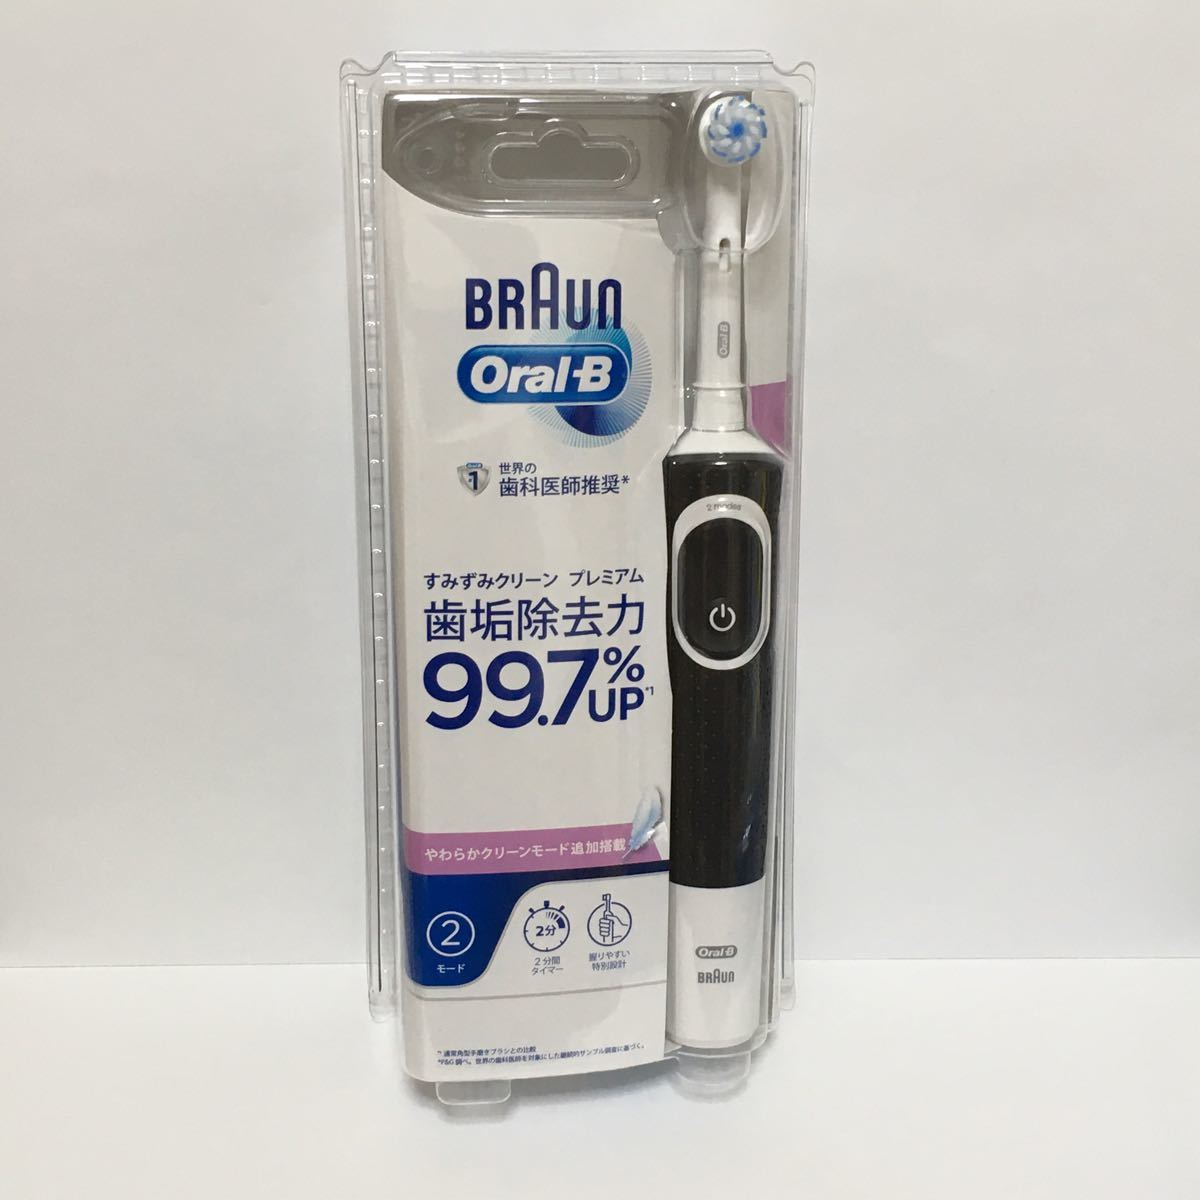 ブラウン オーラルB すみずみクリーンプレミアム 新品未開封 ブラック BRAUN Oral-B 電動歯ブラシ